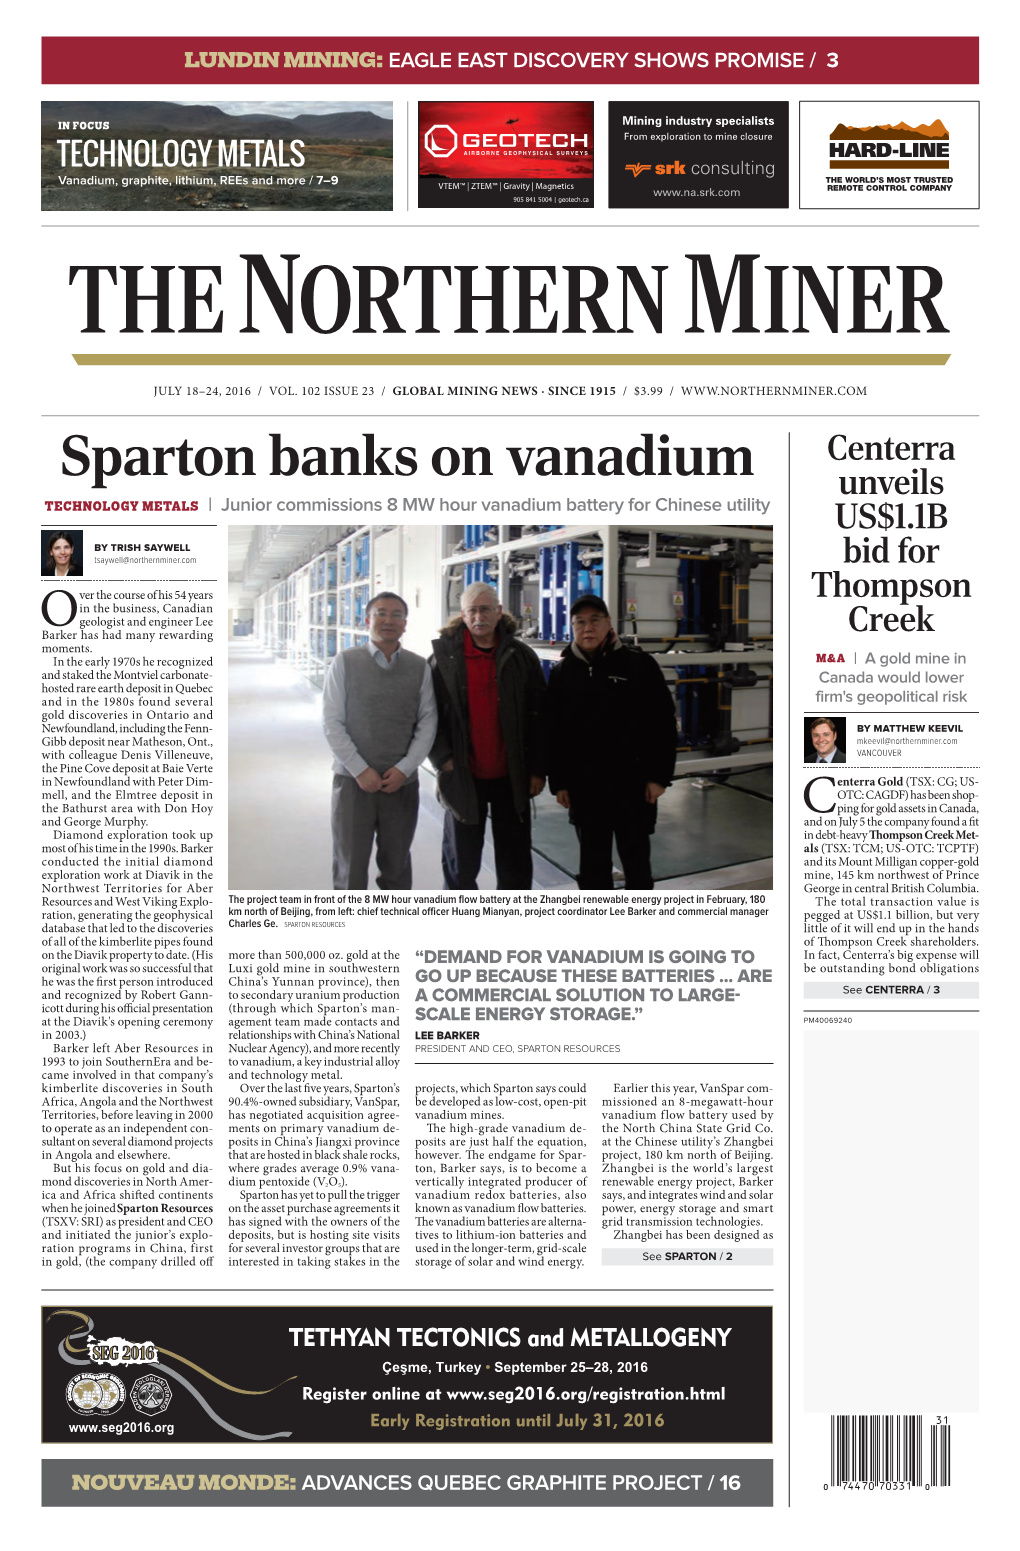 Sparton Banks on Vanadium